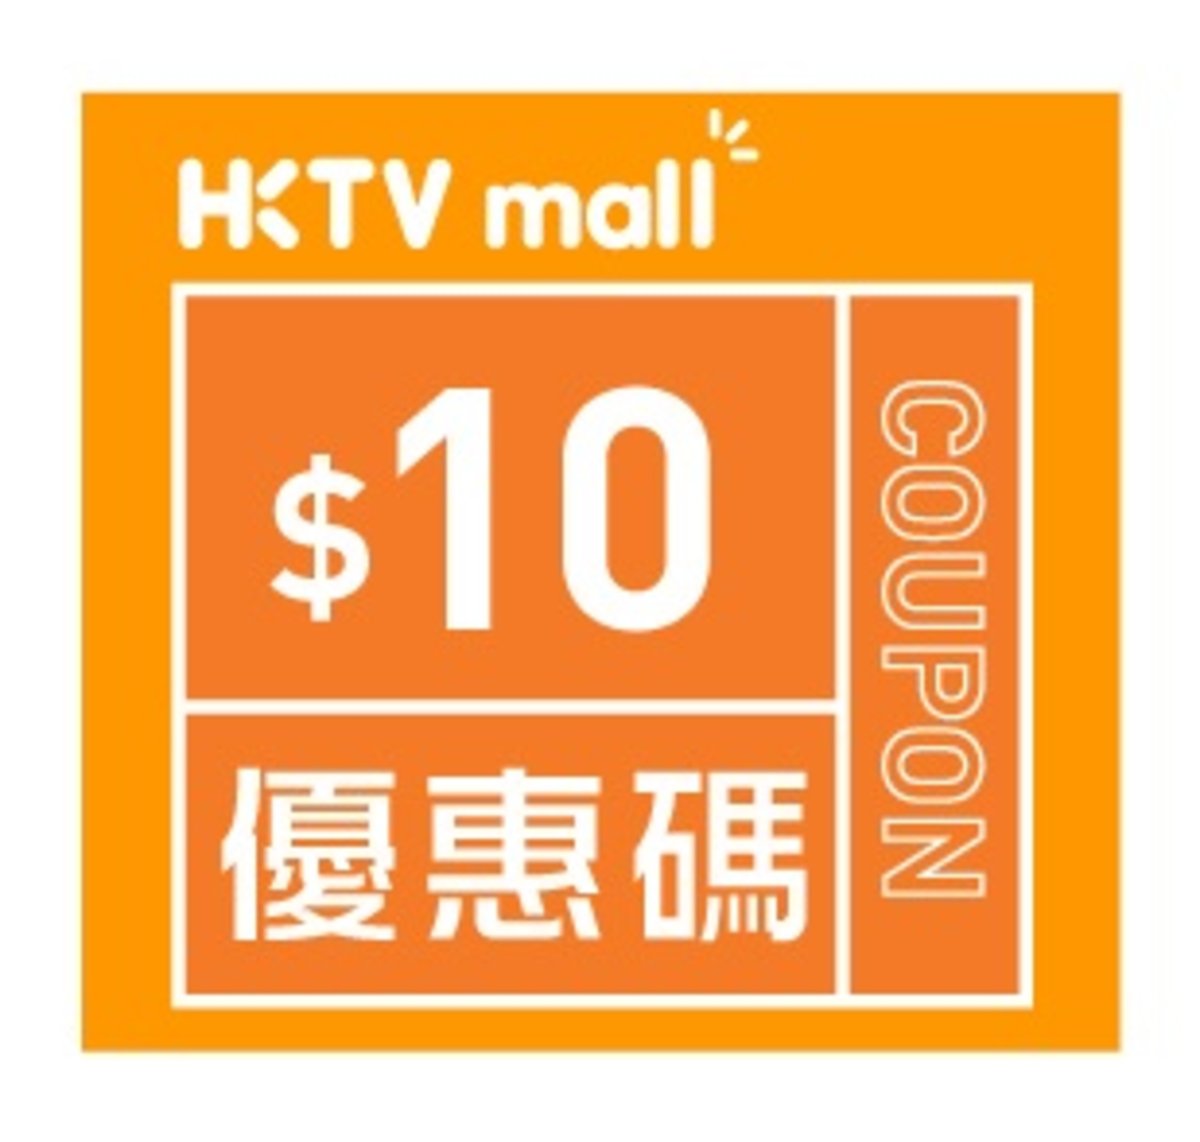 HKTVmall $10購物優惠碼 [有效日期： 2020.06.11 - 2020.07.31]